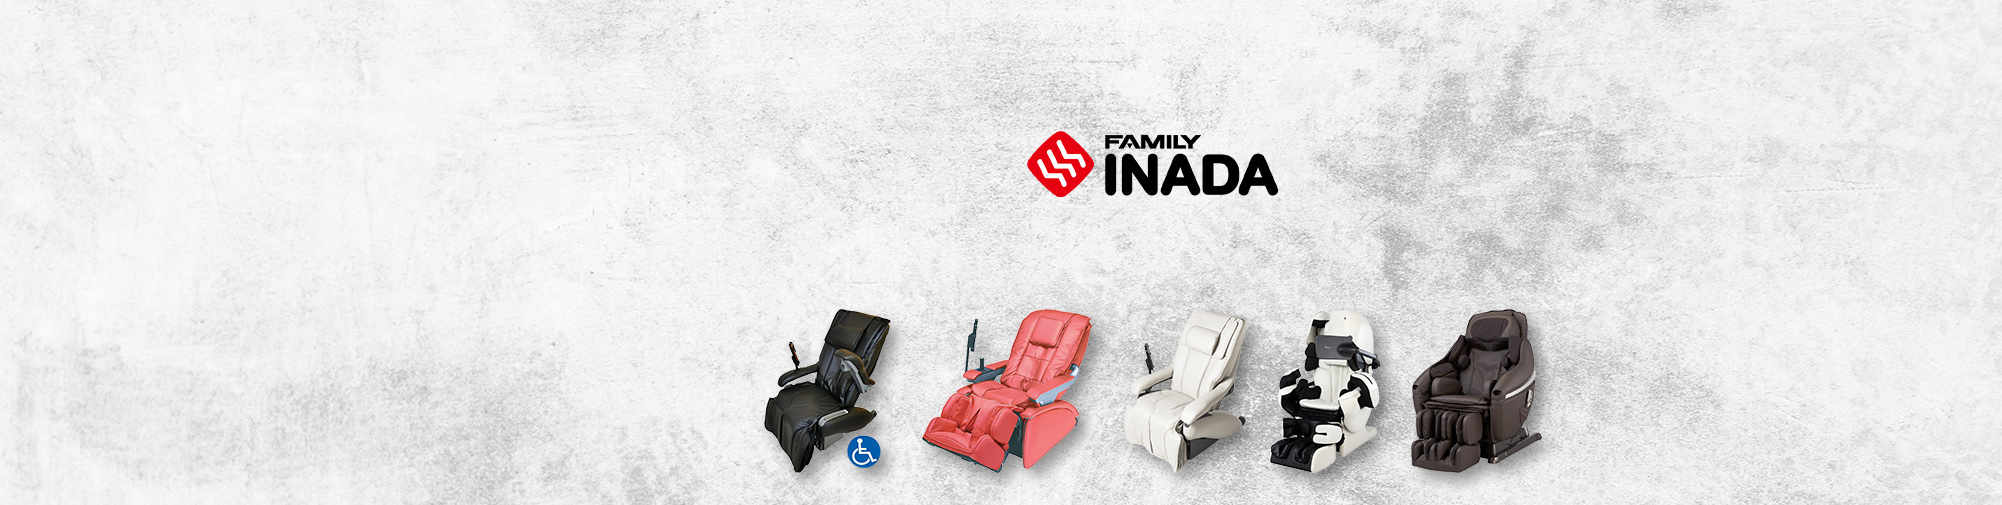 फैमिली इनाडा - एक पारंपरिक जापानी कंपनी | मालिश कुर्सी की दुनिया